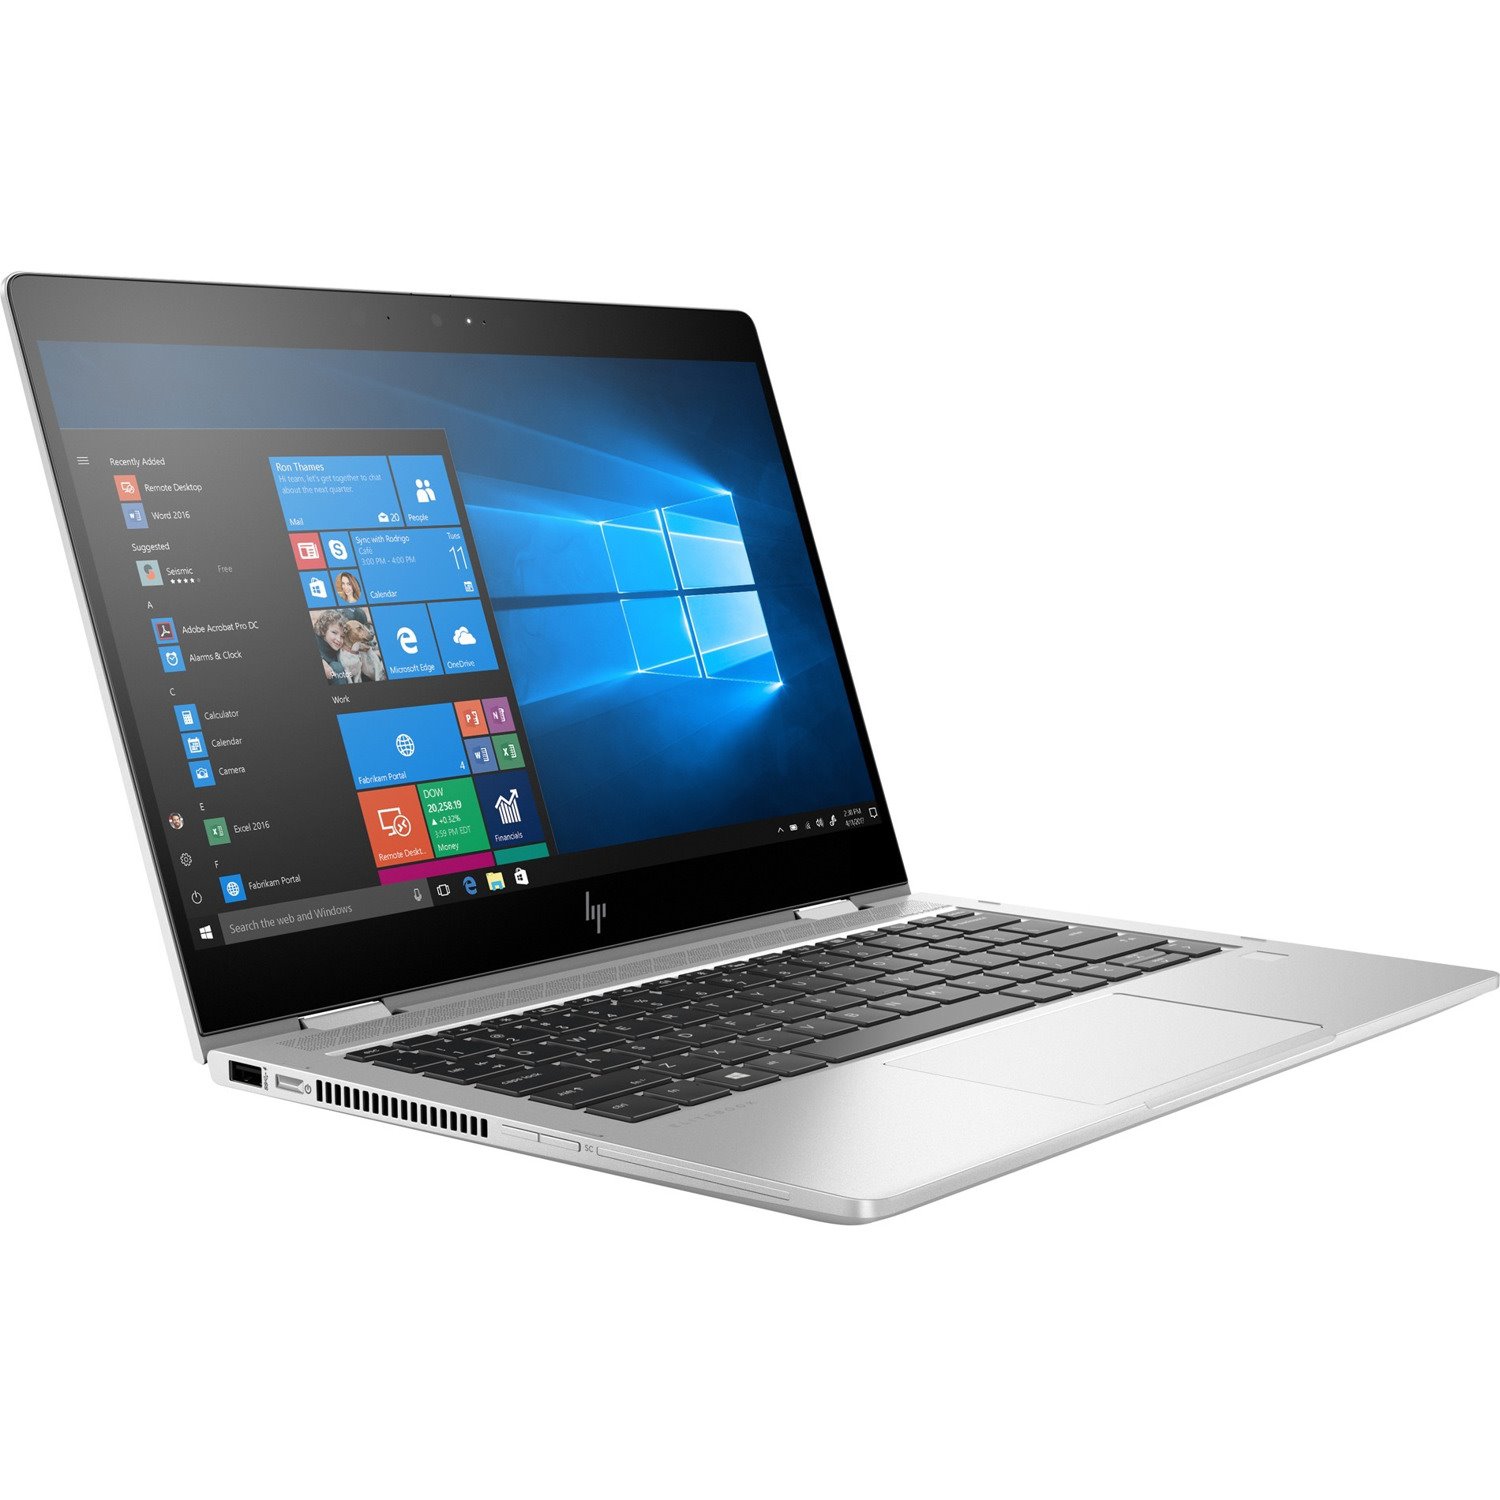 HP EliteBook x360 830 G6 13.3" Touchscreen Convertible 2 in 1 Notebook - 1920 x 1080 - Intel Core i5 8th Gen i5-8365U Quad-core (4 Core) 1.60 GHz - 8 GB Total RAM - 256 GB SSD